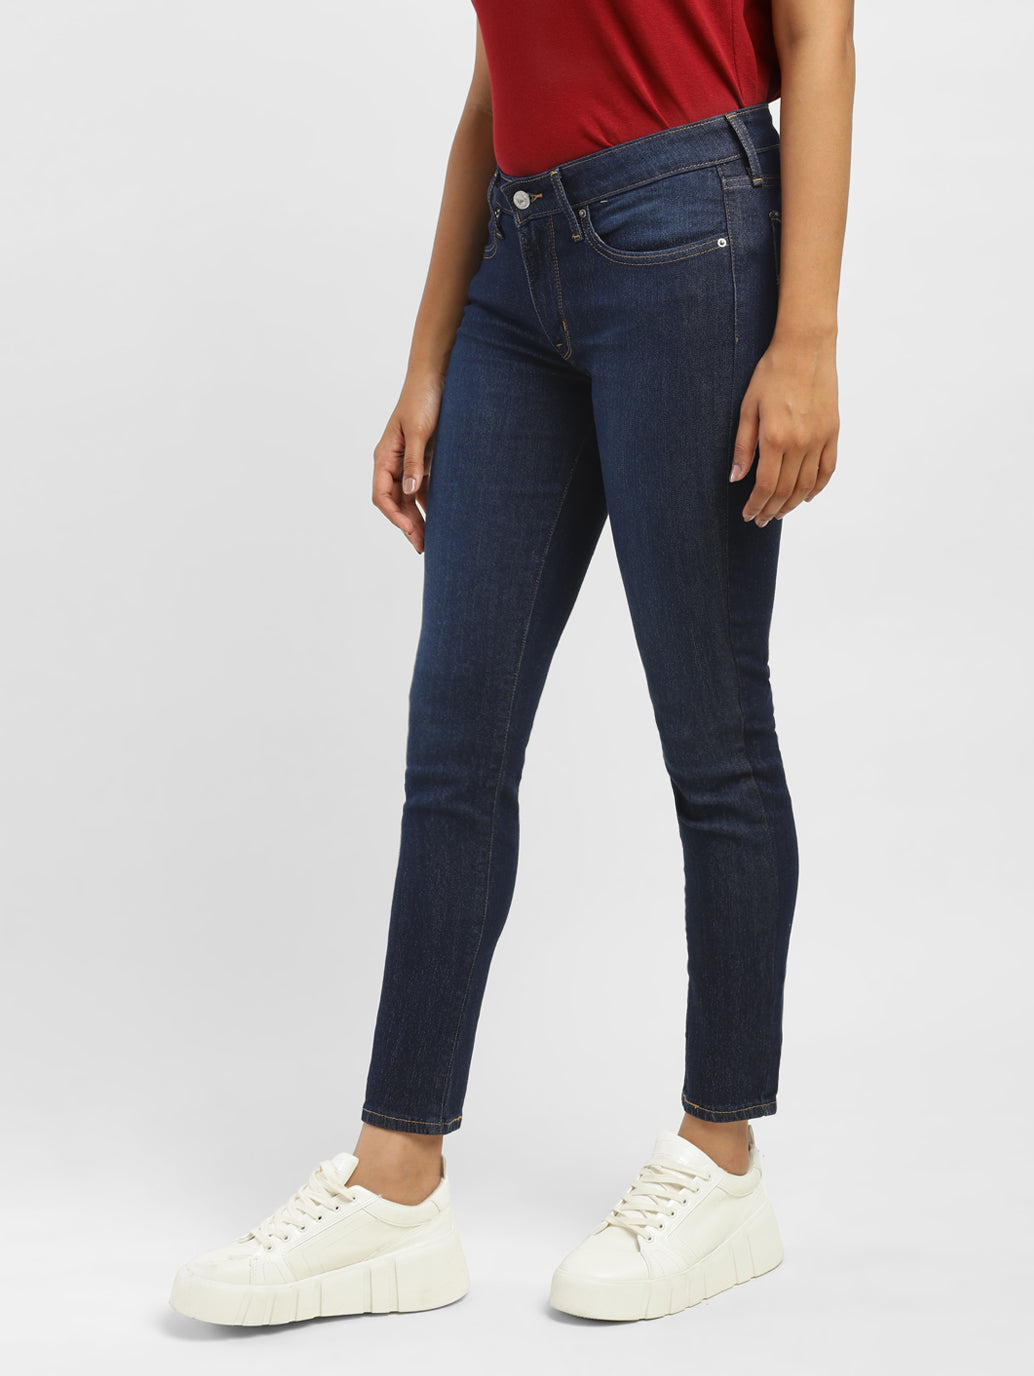 Women's 711 Skinny Fit Jeans